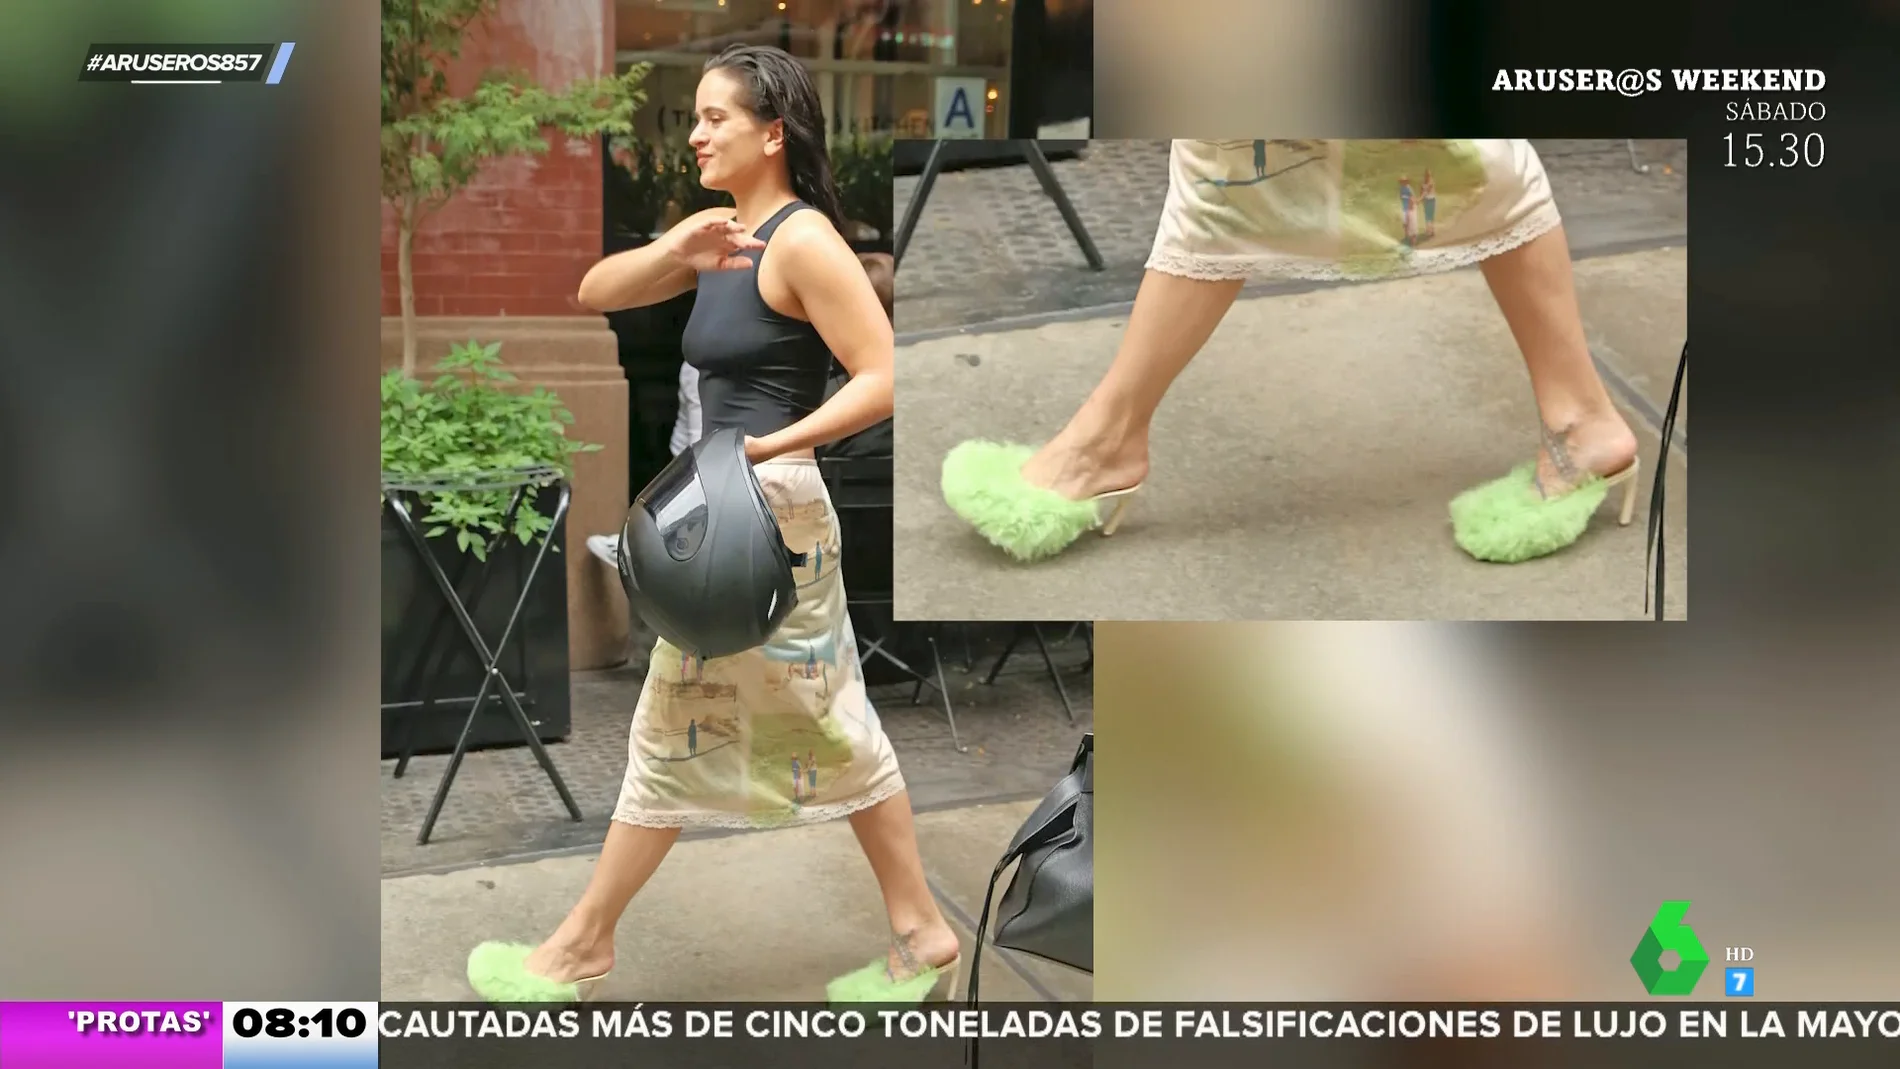 "Como una mopa": así son los curiosos zapatos de Rosalía que han sorprendido a los aruseros